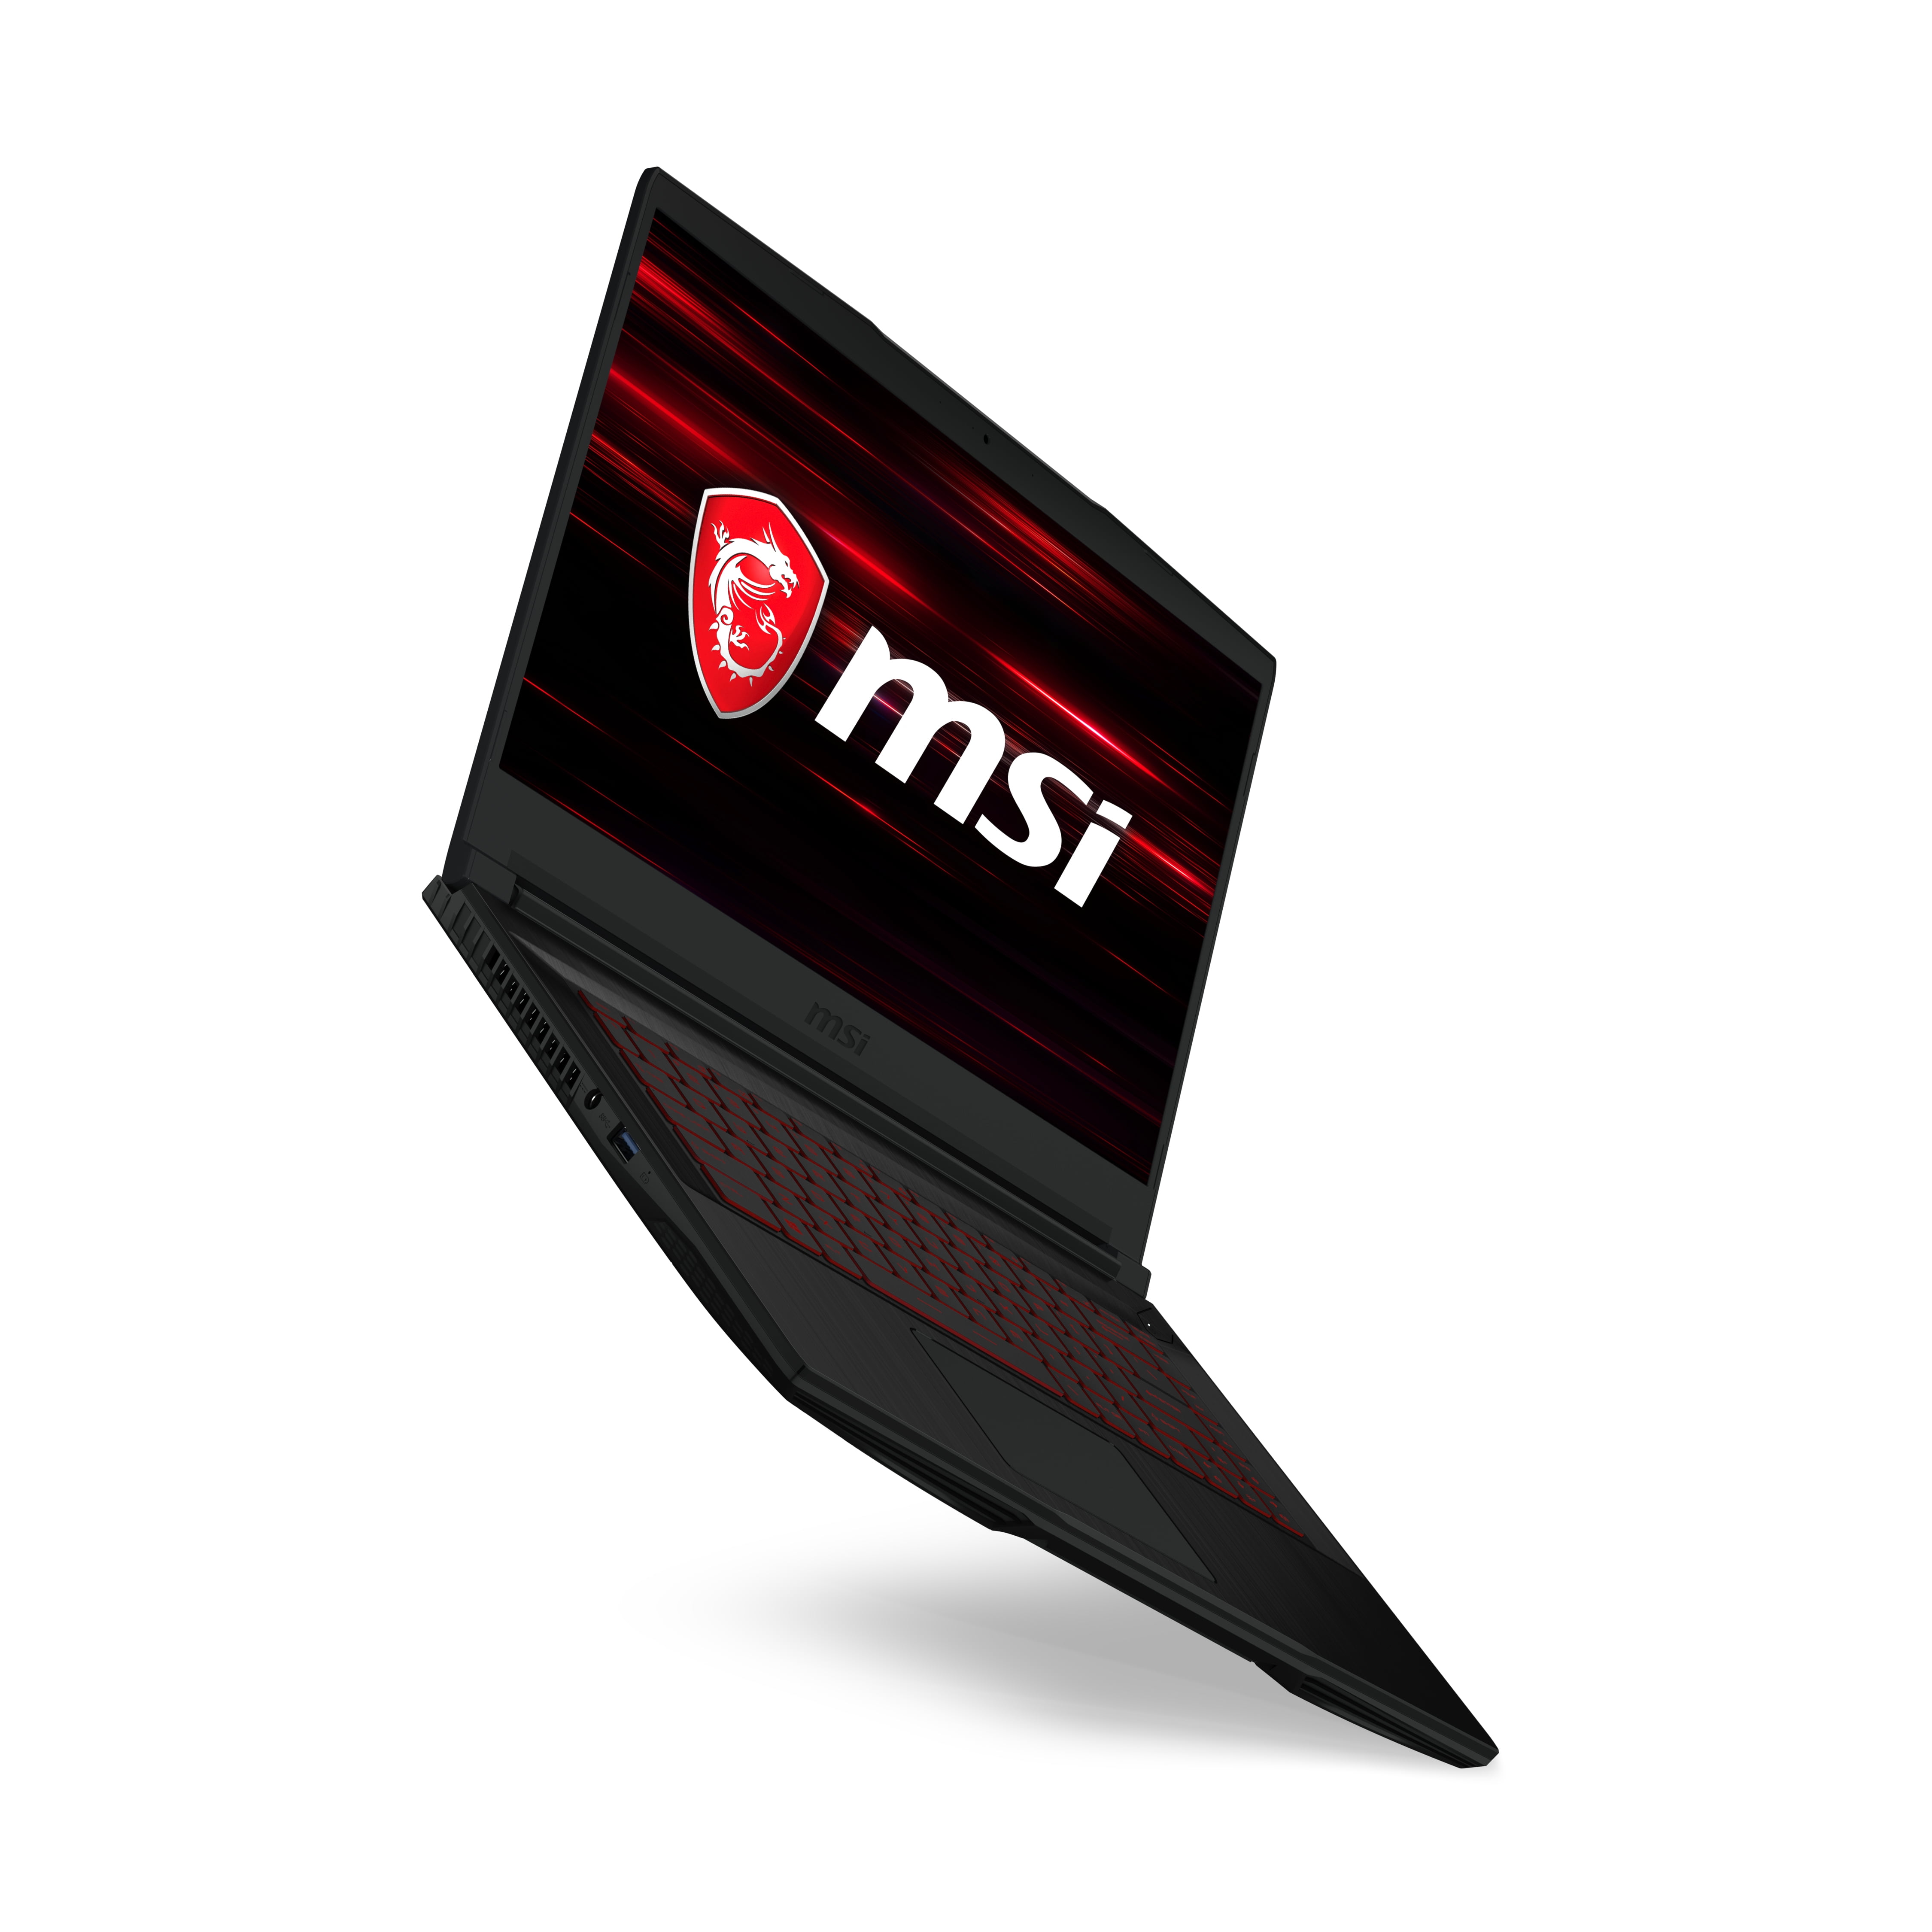 MSI GF63 8RC-264 Performance Gaming Laptop 15.6